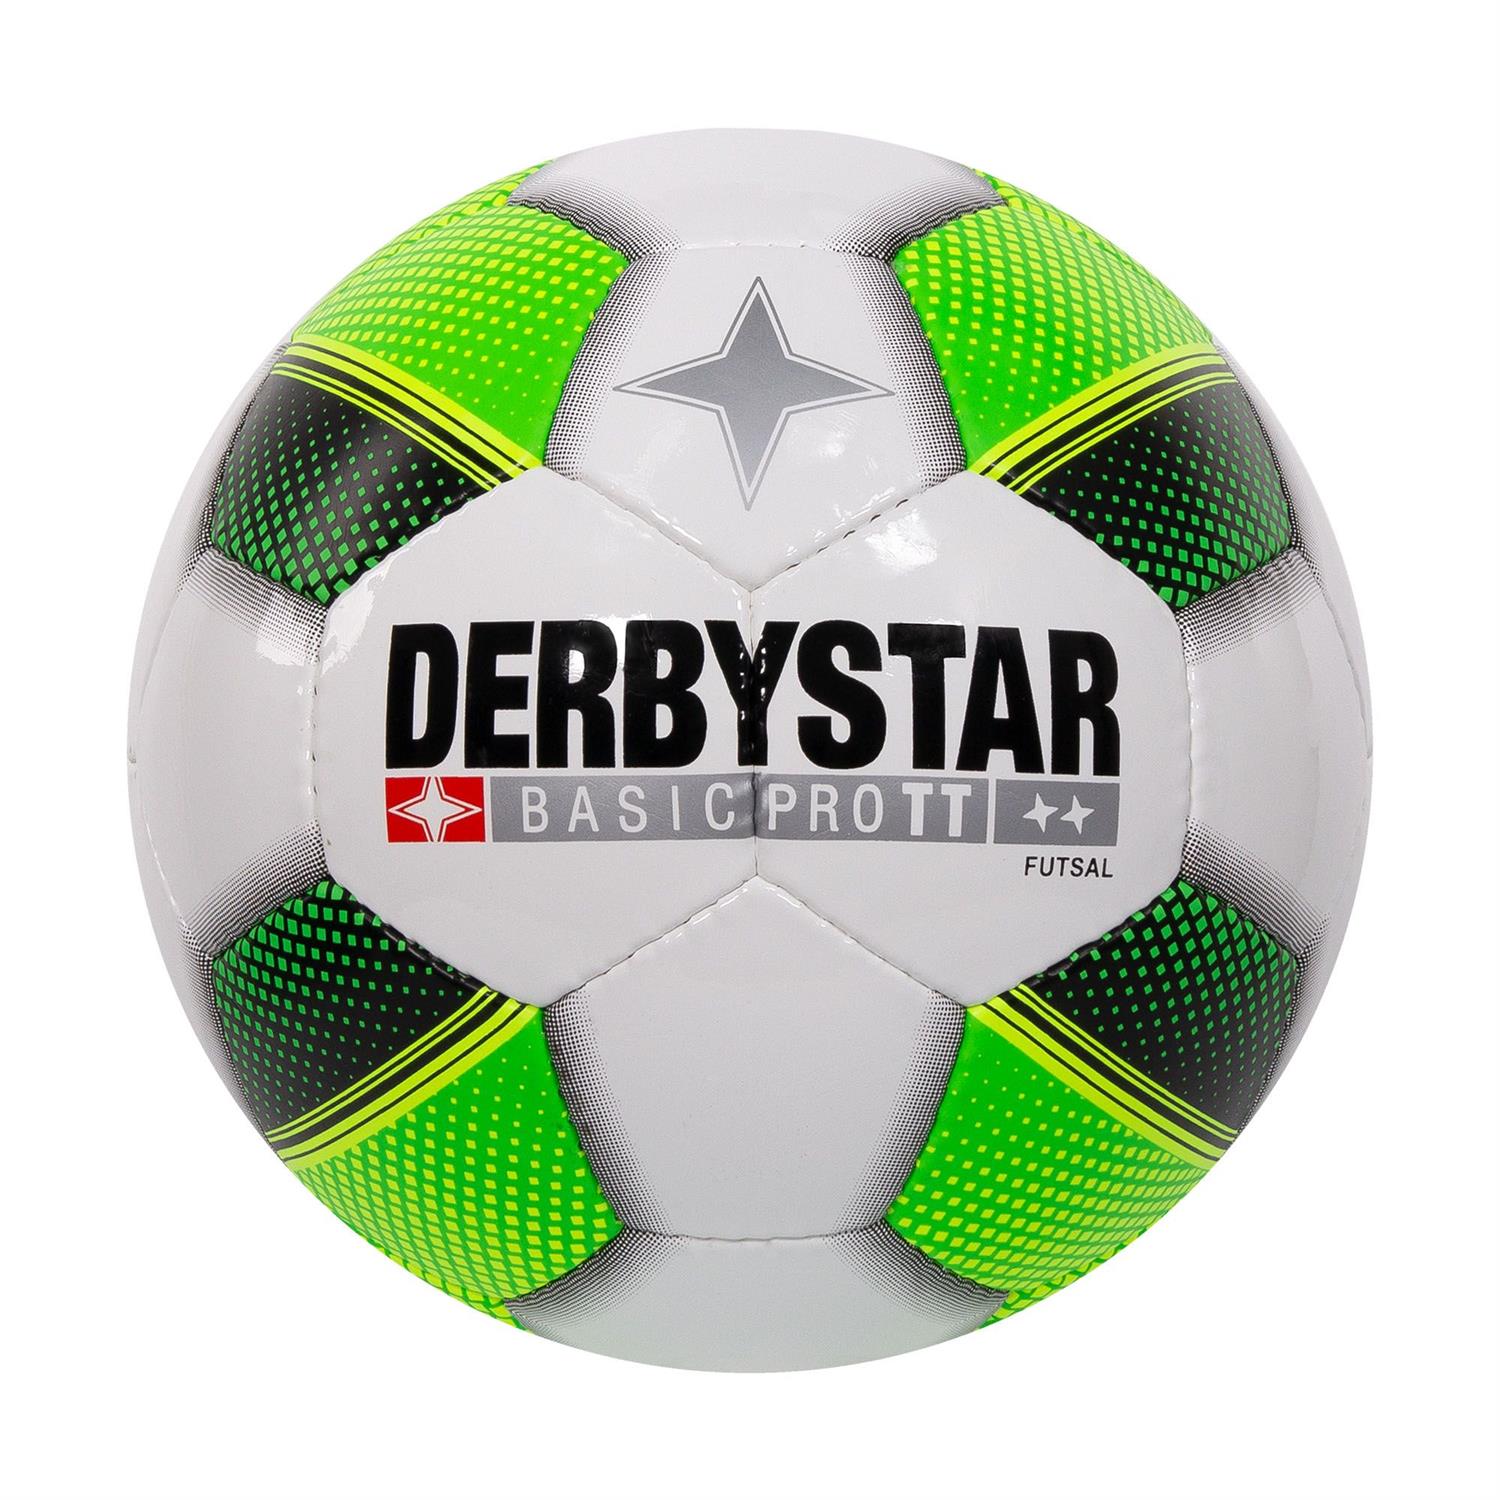 Vies Barry Ontslag Derbystar derbystar futsal basic pro tt 287980-2100 van ballen